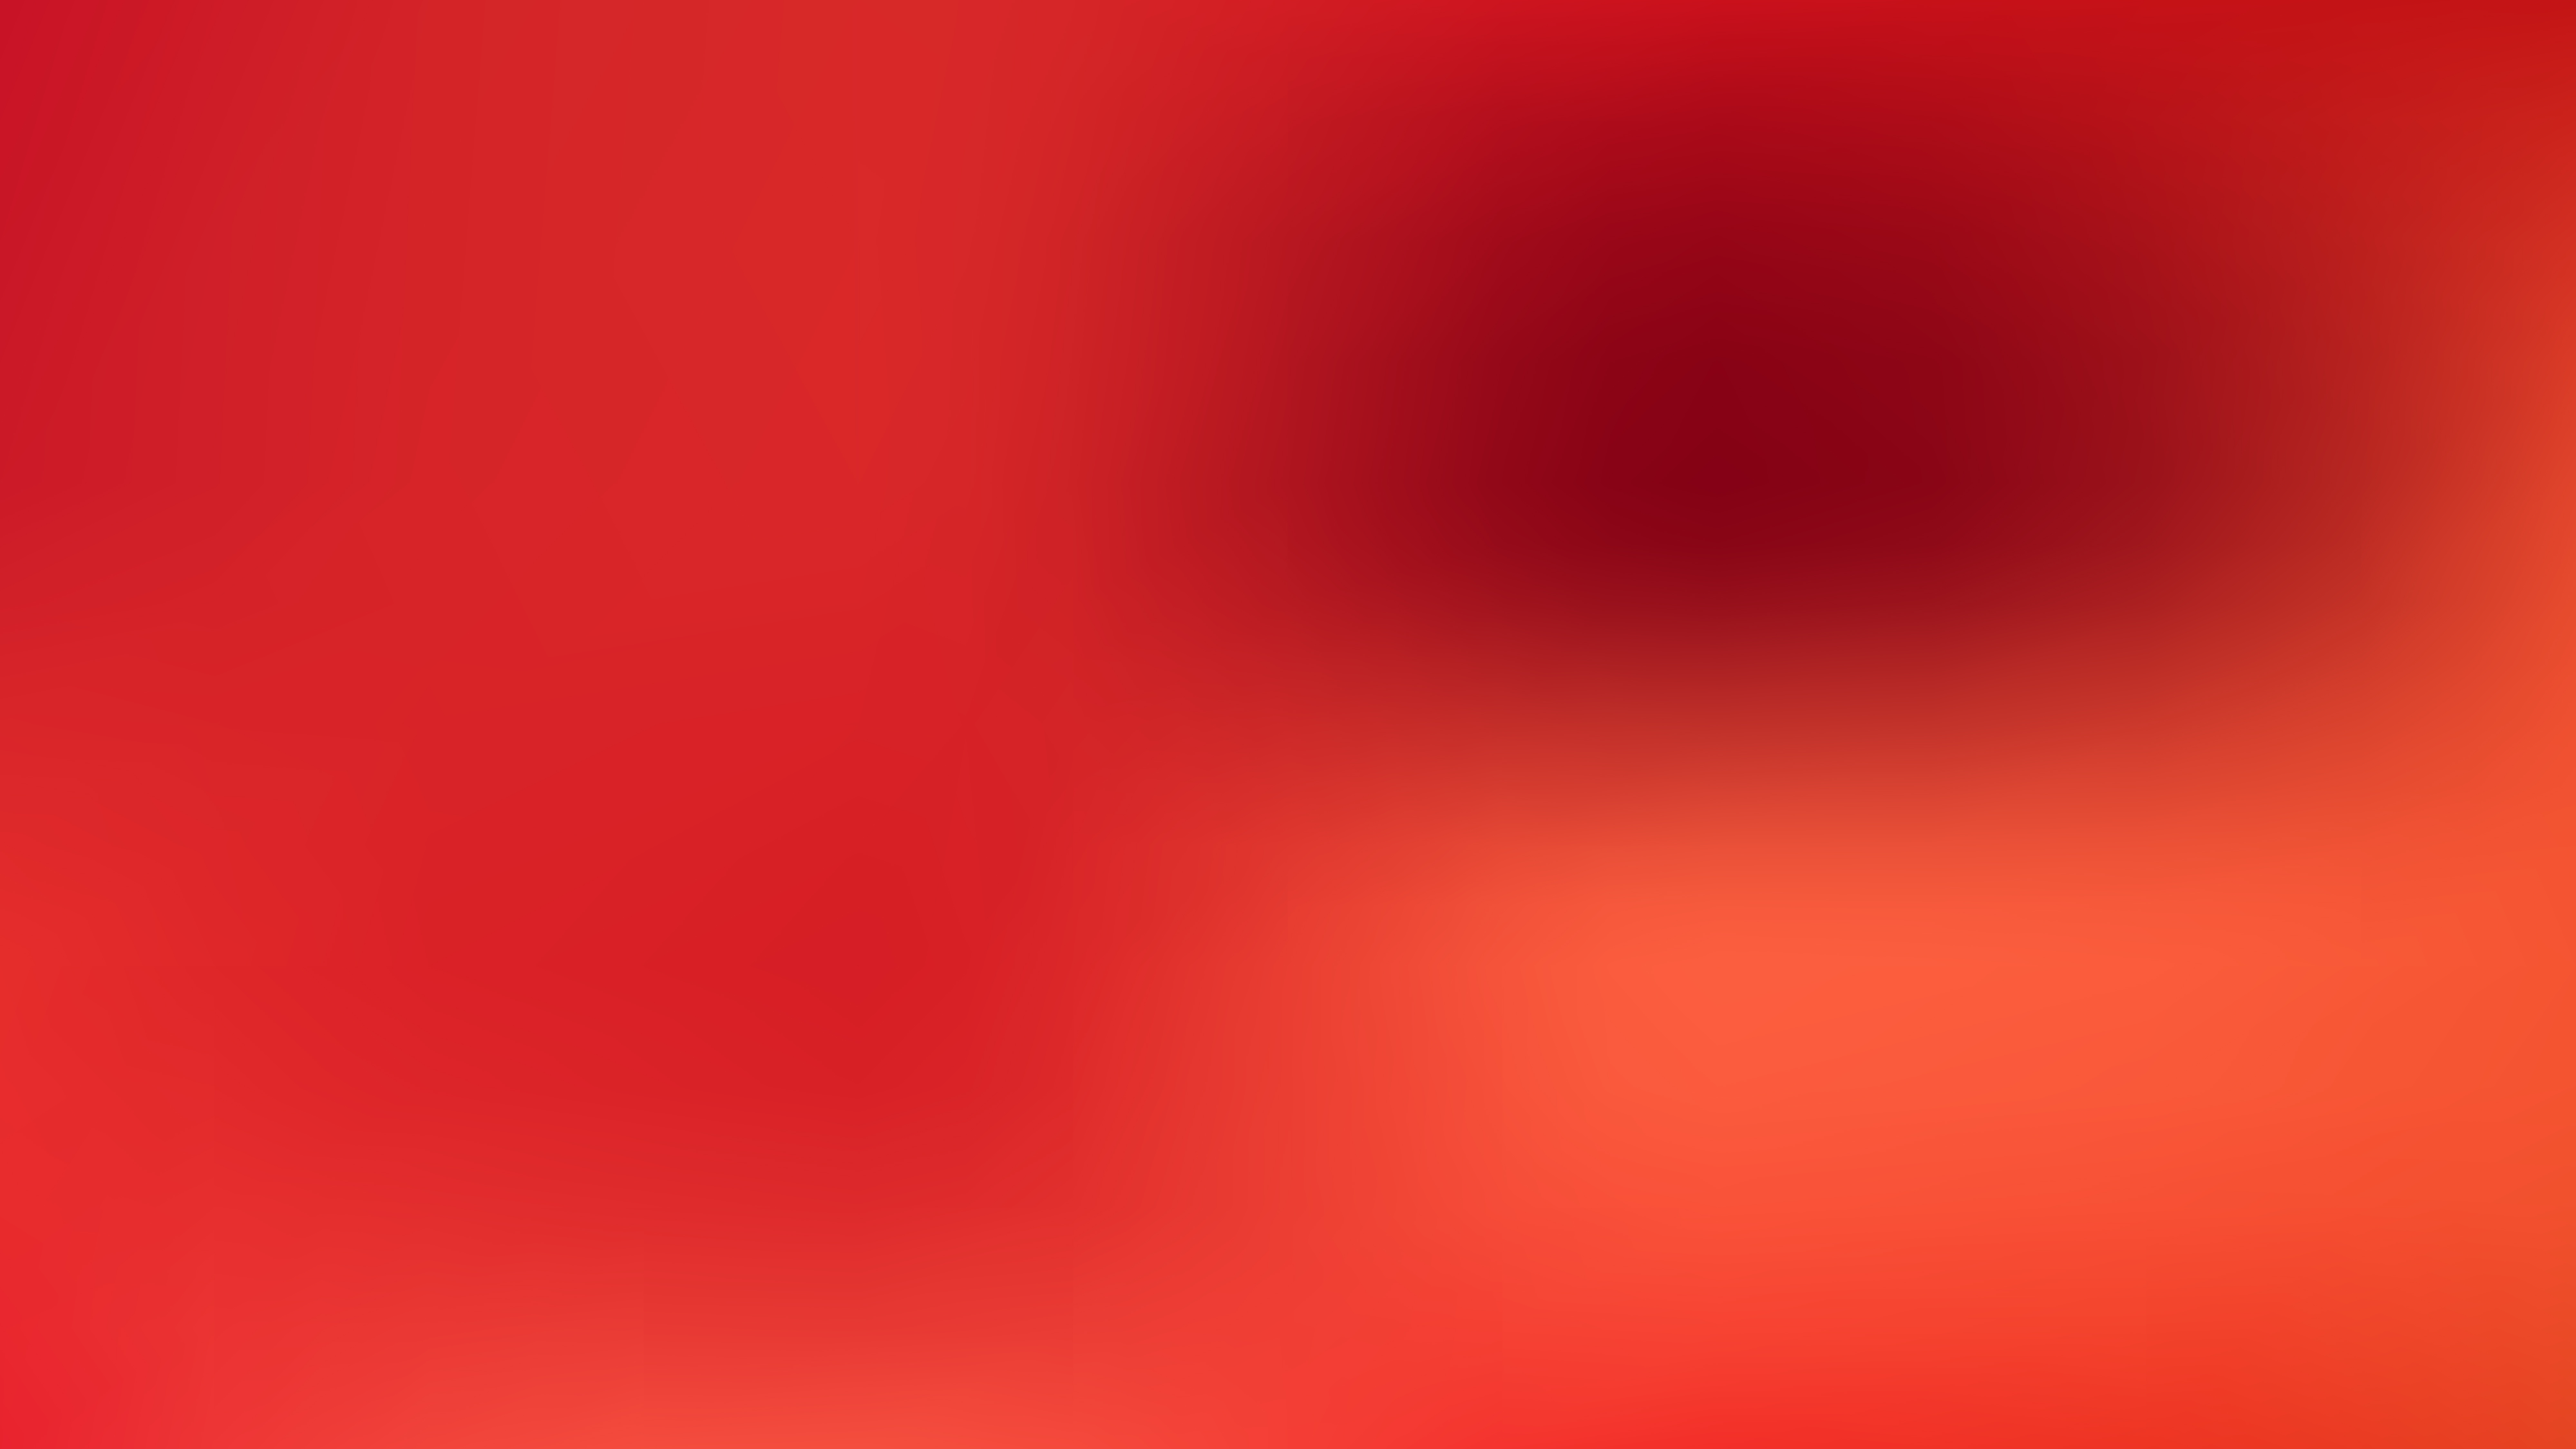 Hình ảnh Red Blur sẽ mang đến cho bạn một cảm giác bùng nổ và nhiệt huyết. Tông màu đỏ tươi sáng và mờ đục tạo thành một không gian đầy tính nghệ thuật. Hãy cùng đắm chìm trong hình ảnh đó và tìm hiểu thêm về Red Blur.